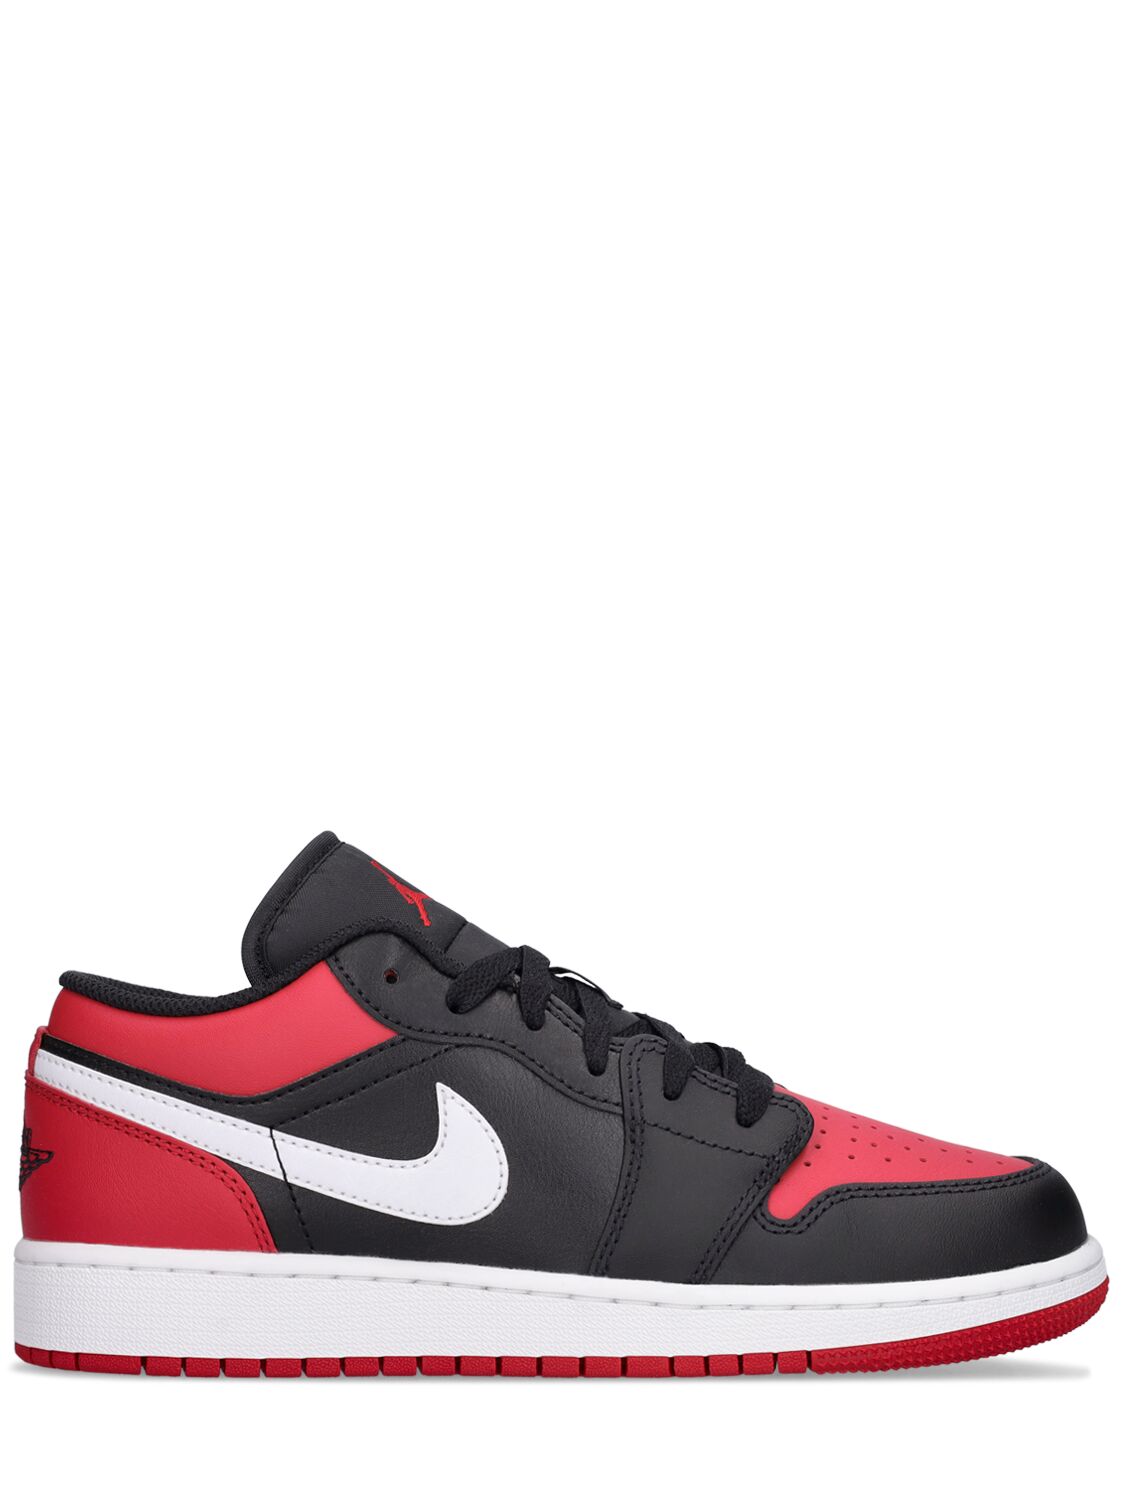 Image of Air Jordan 1 Low Sneakers